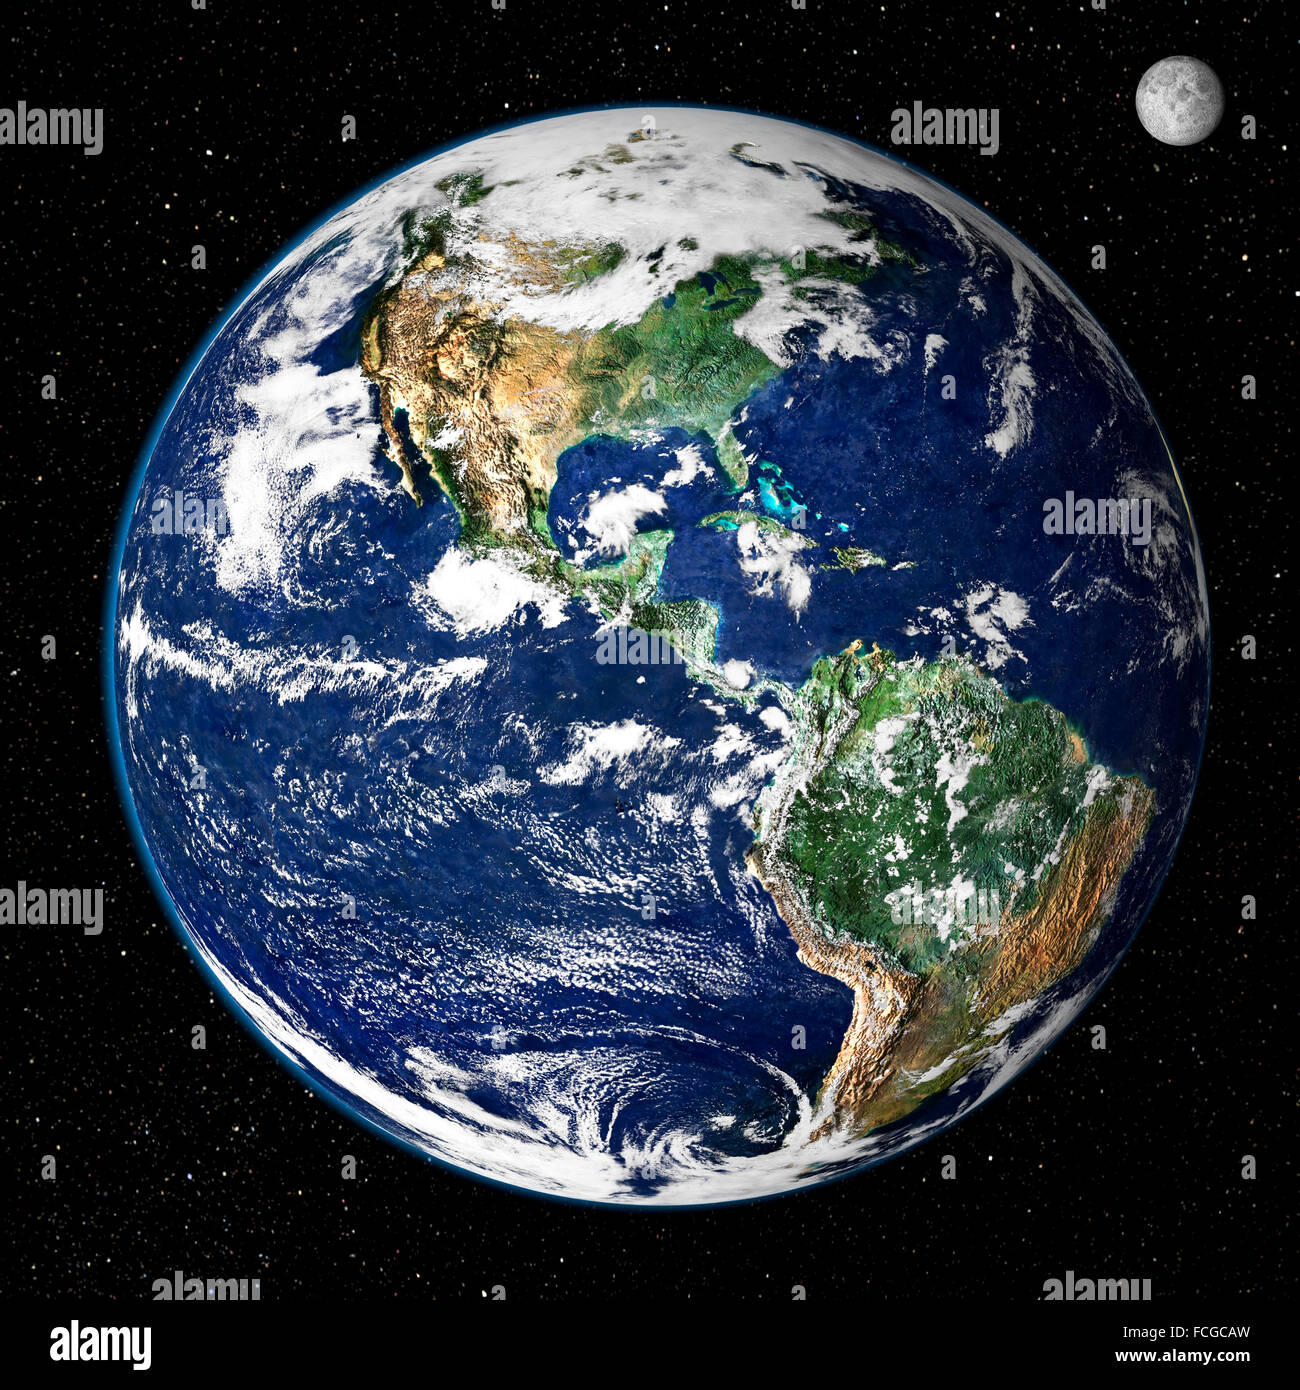 La terre de l'espace. Cette véritable image en couleur affiche le Nord et l'Amérique du Sud tels qu'ils apparaissent à partir de l'espace 35 000 km (22 000 miles) au-dessus de la Terre. L'image est une combinaison de données provenant de deux satellites - le spectromètre imageur à résolution moyenne (MODIS) instrument à bord du satellite Terra de la NASA a recueilli les données de surface de terrain tandis que la NOAA satellite géostationnaire opérationnel d'étude de l'environnement (GOES) produit un instantané de la les nuages. Image créée par la NASA GSFC Banque D'Images